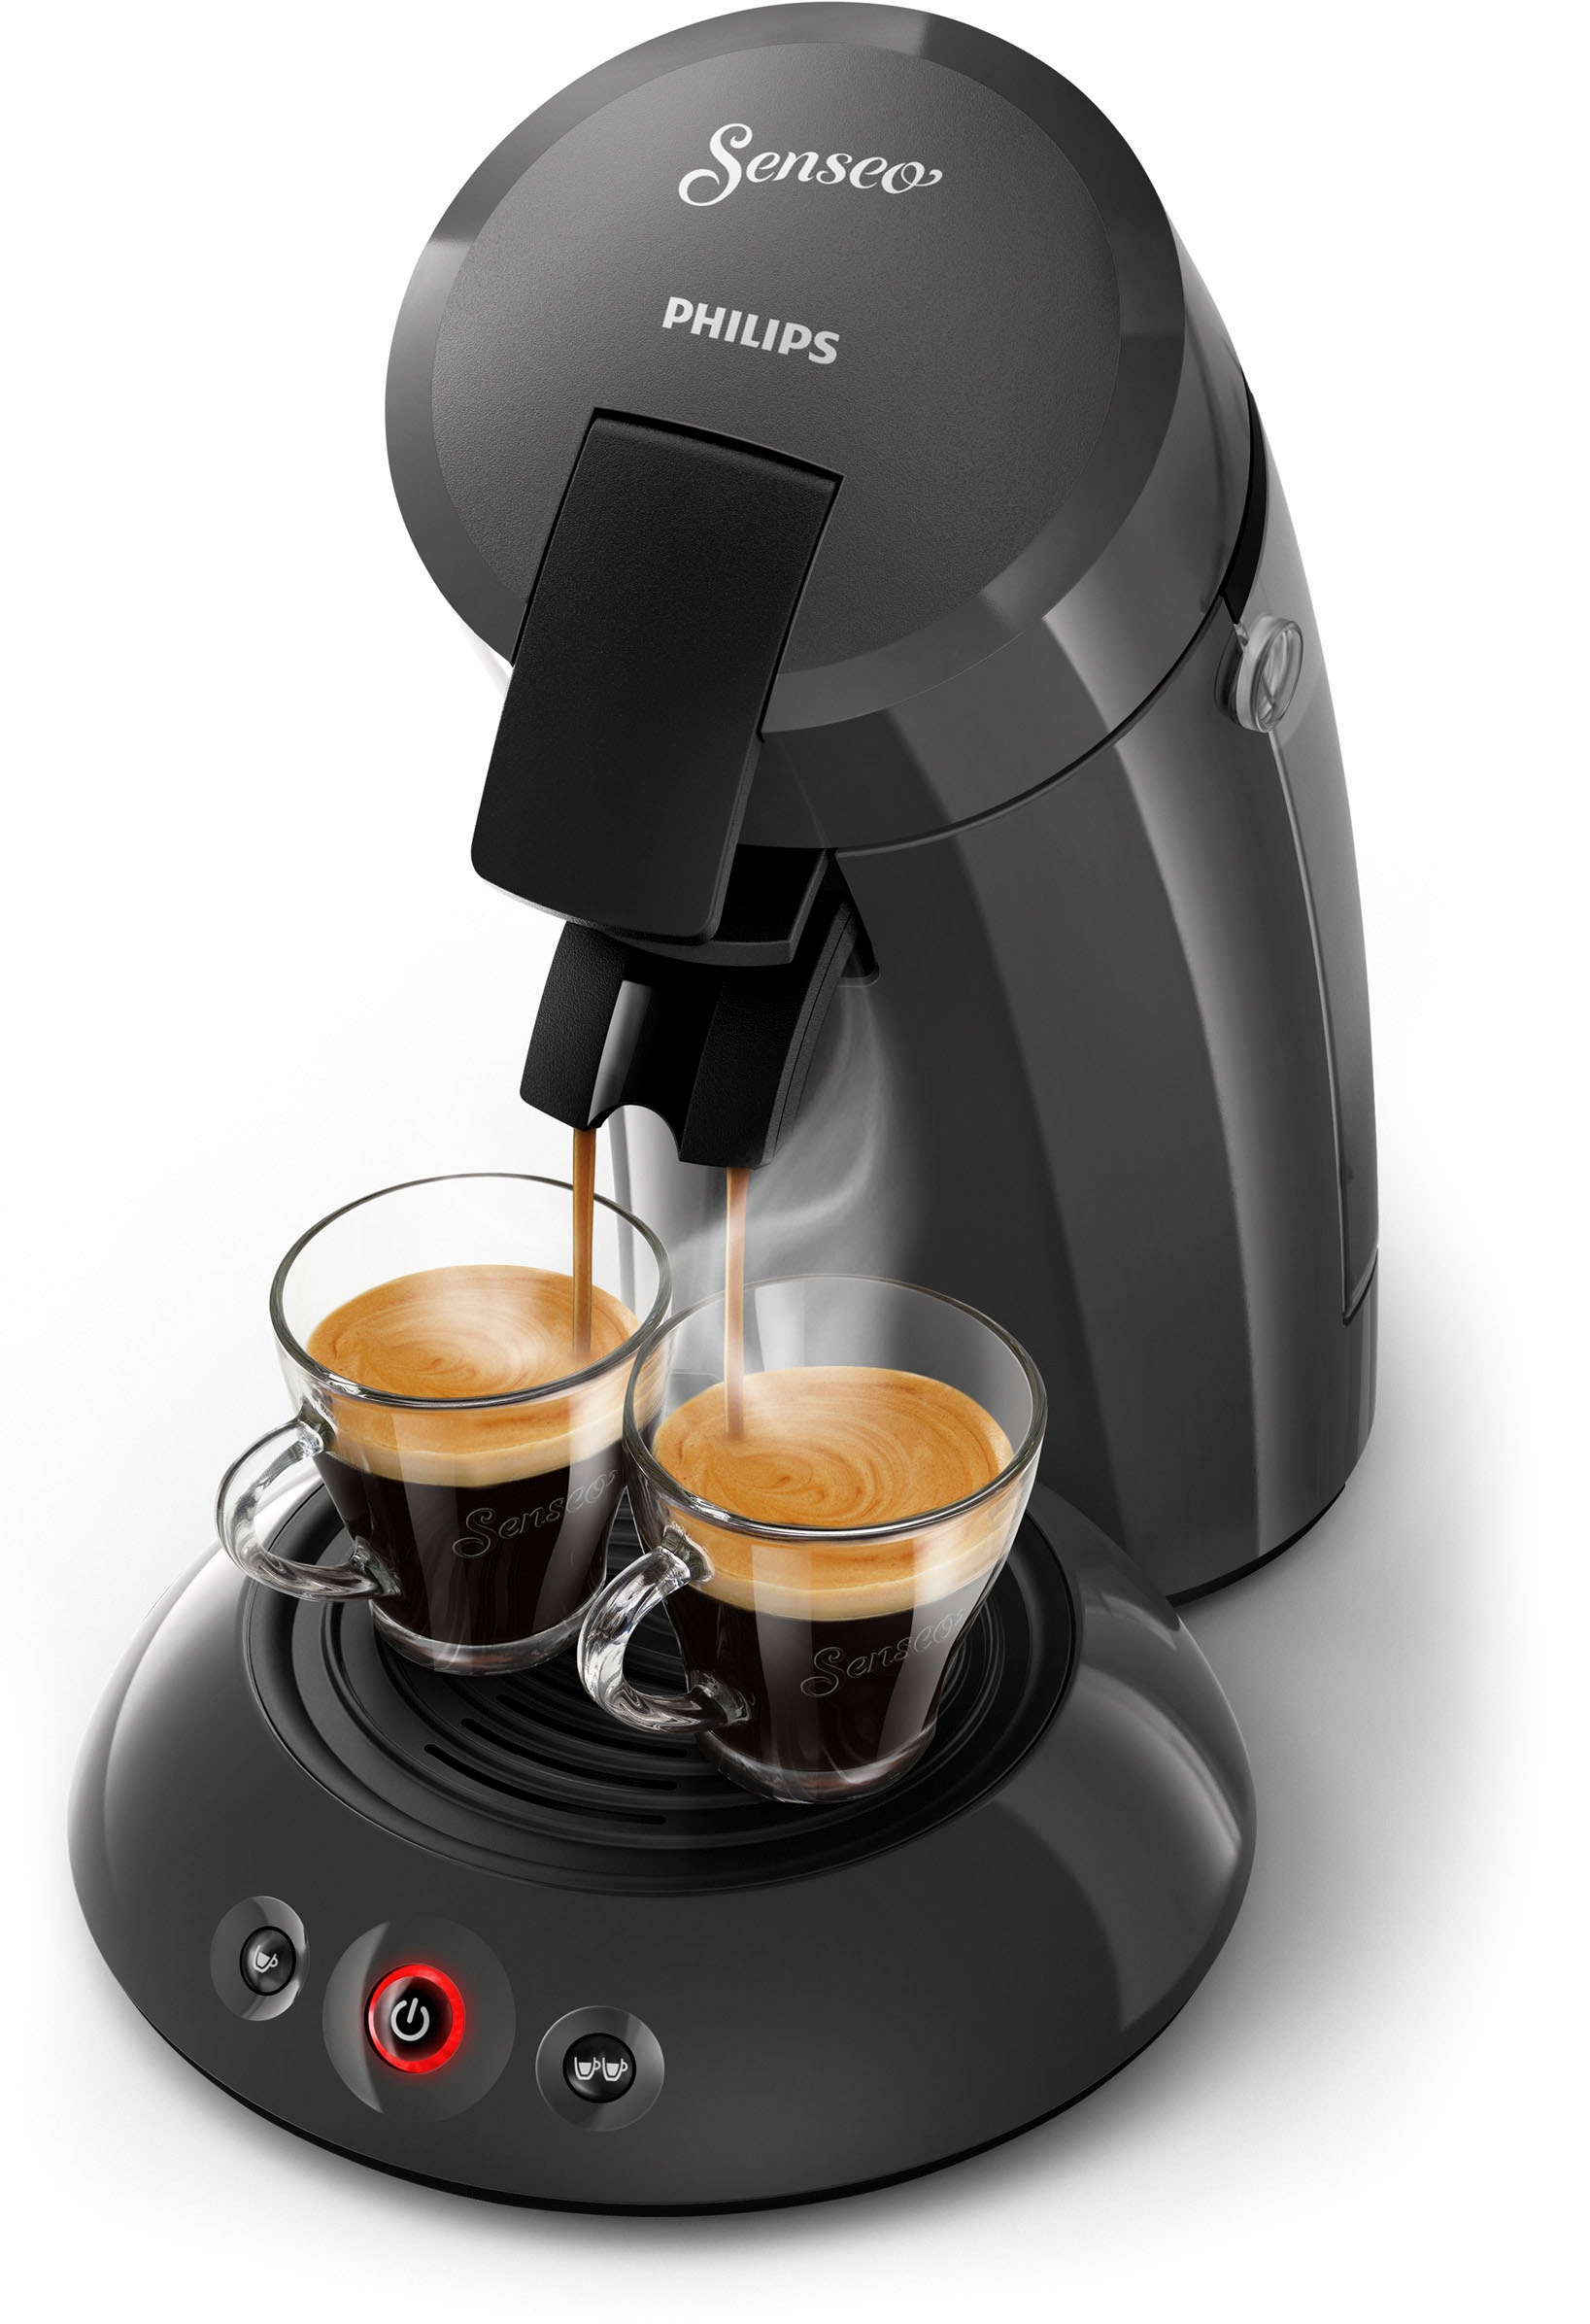 Philips Senseo Kaffeepadmaschine »Original im jetzt 79,99 von online bei Milchaufschäumer inkl. HD6553/65«, € Wert OTTO UVP